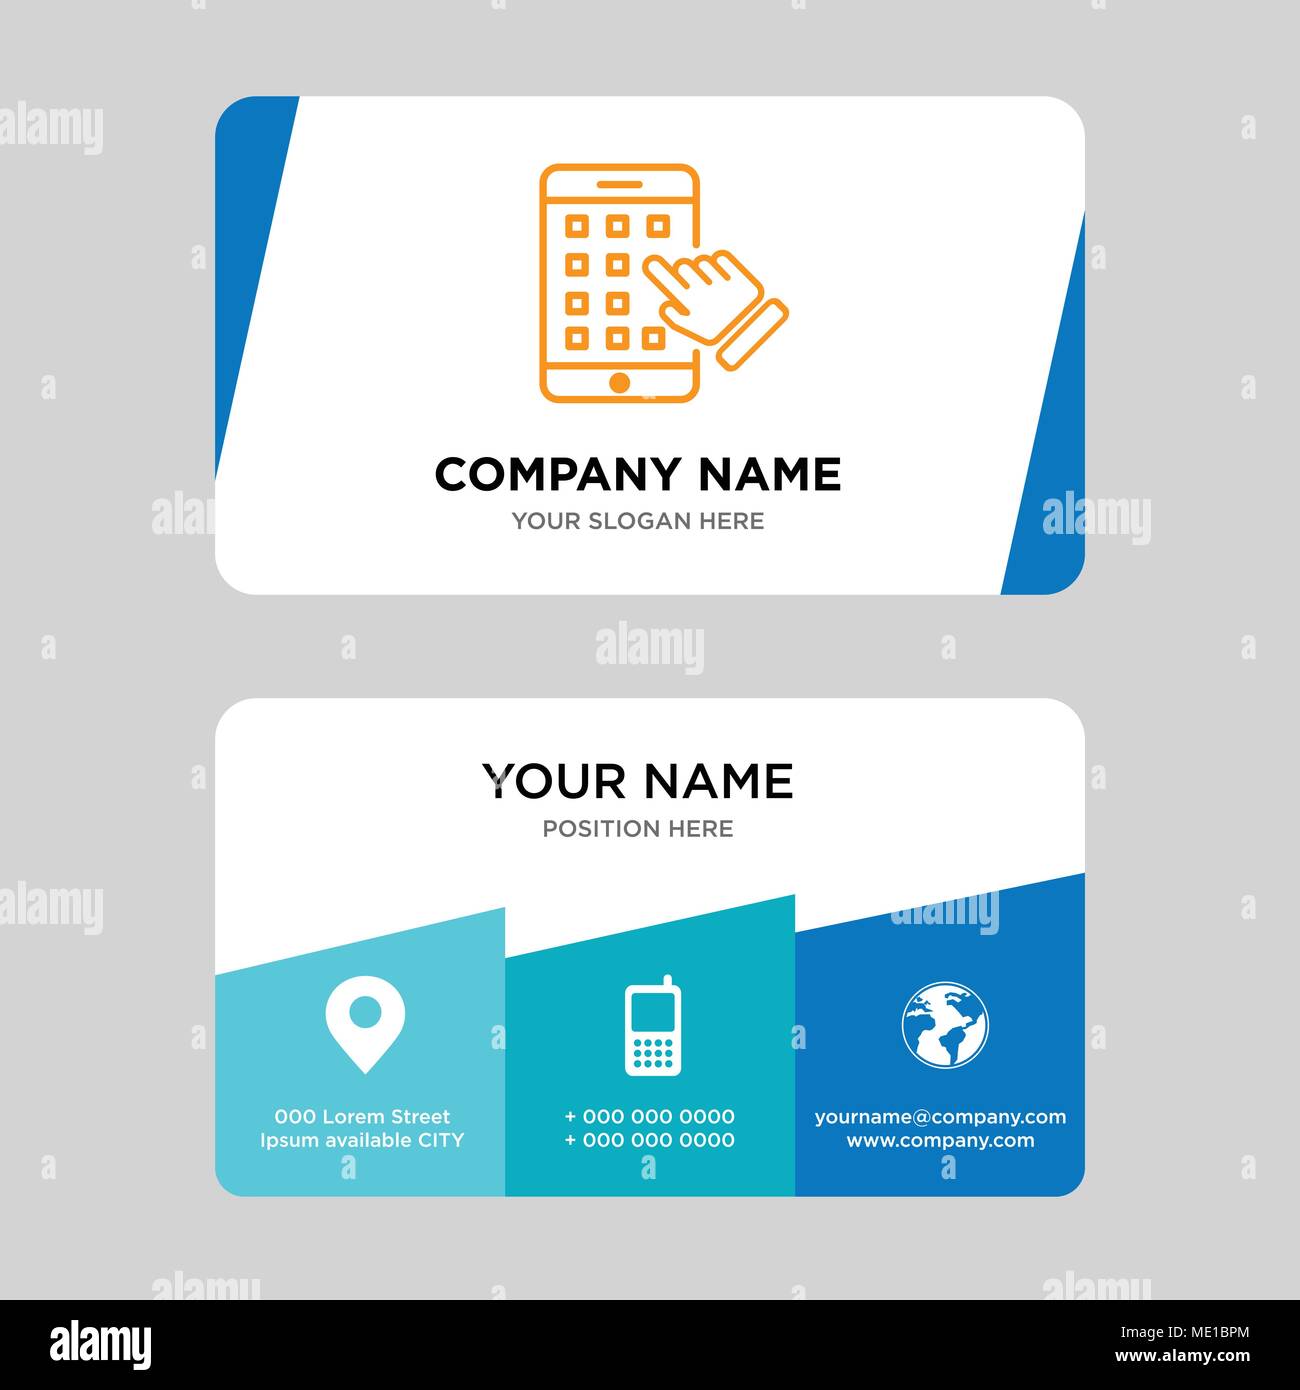 Iphone business card modello di progettazione, visita per la vostra azienda, moderno creativo e pulire la carta di identità illustrazione vettoriale Illustrazione Vettoriale